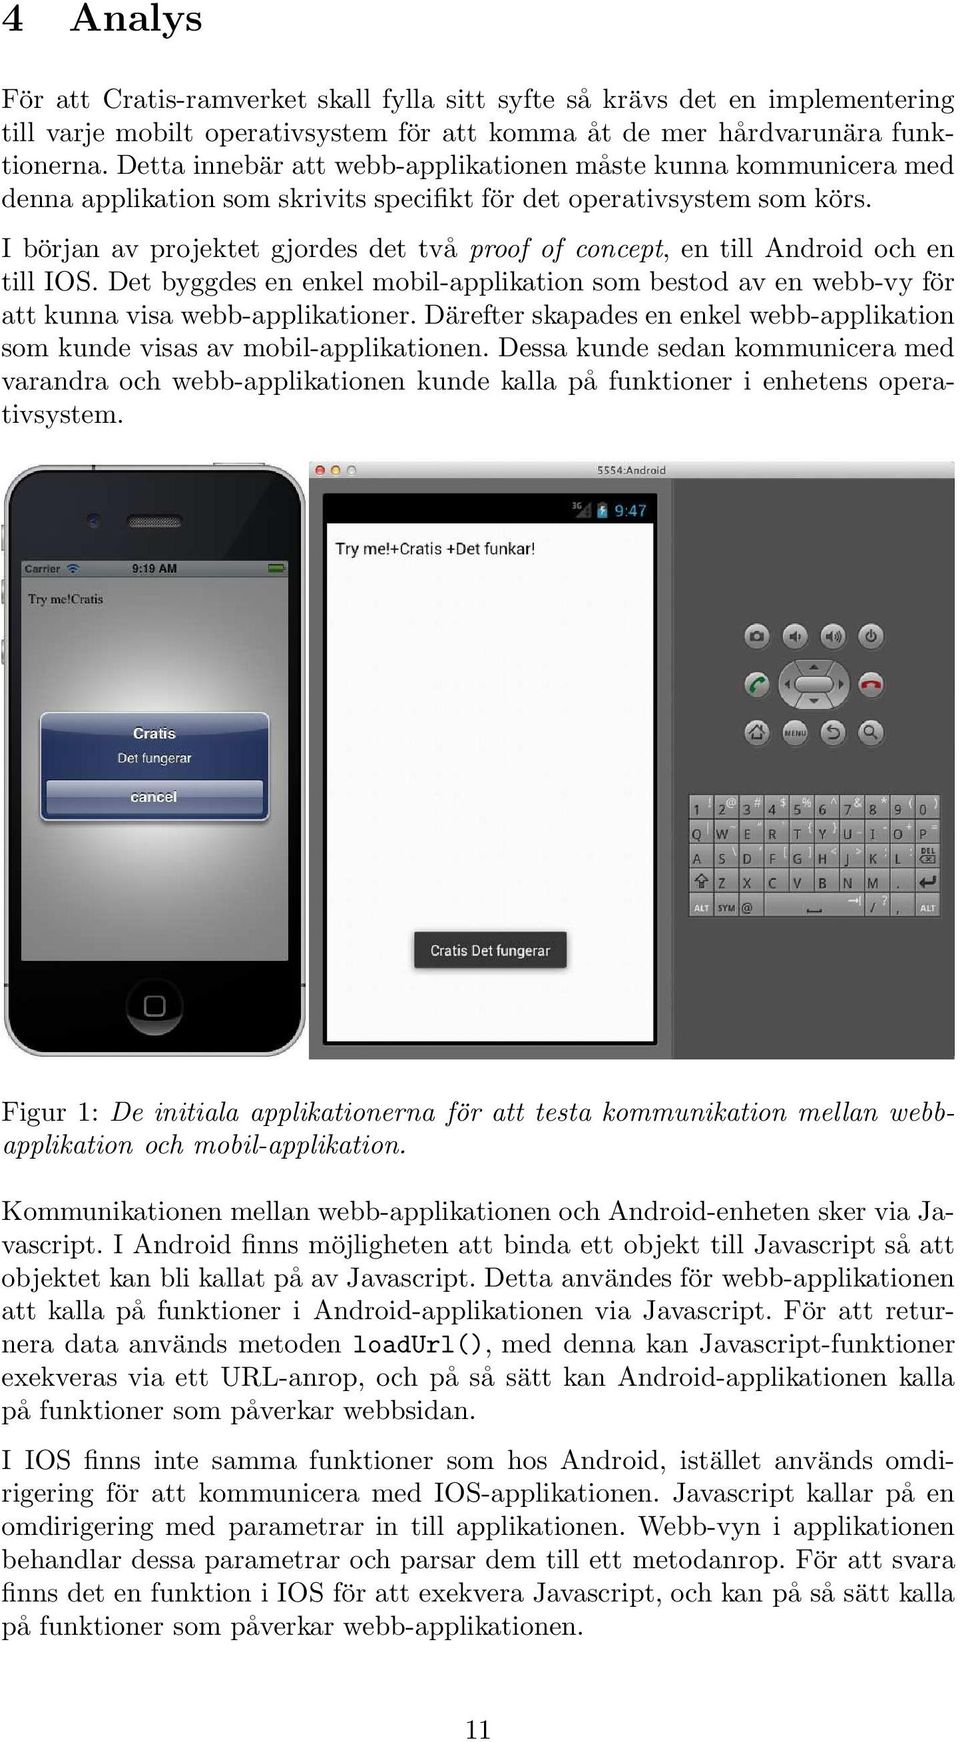 Ibörjan av projektet gjordes det två proof of concept, en till Android och en till IOS. Det byggdes en enkel mobil-applikation som bestod av en webb-vy för att kunna visa webb-applikationer.